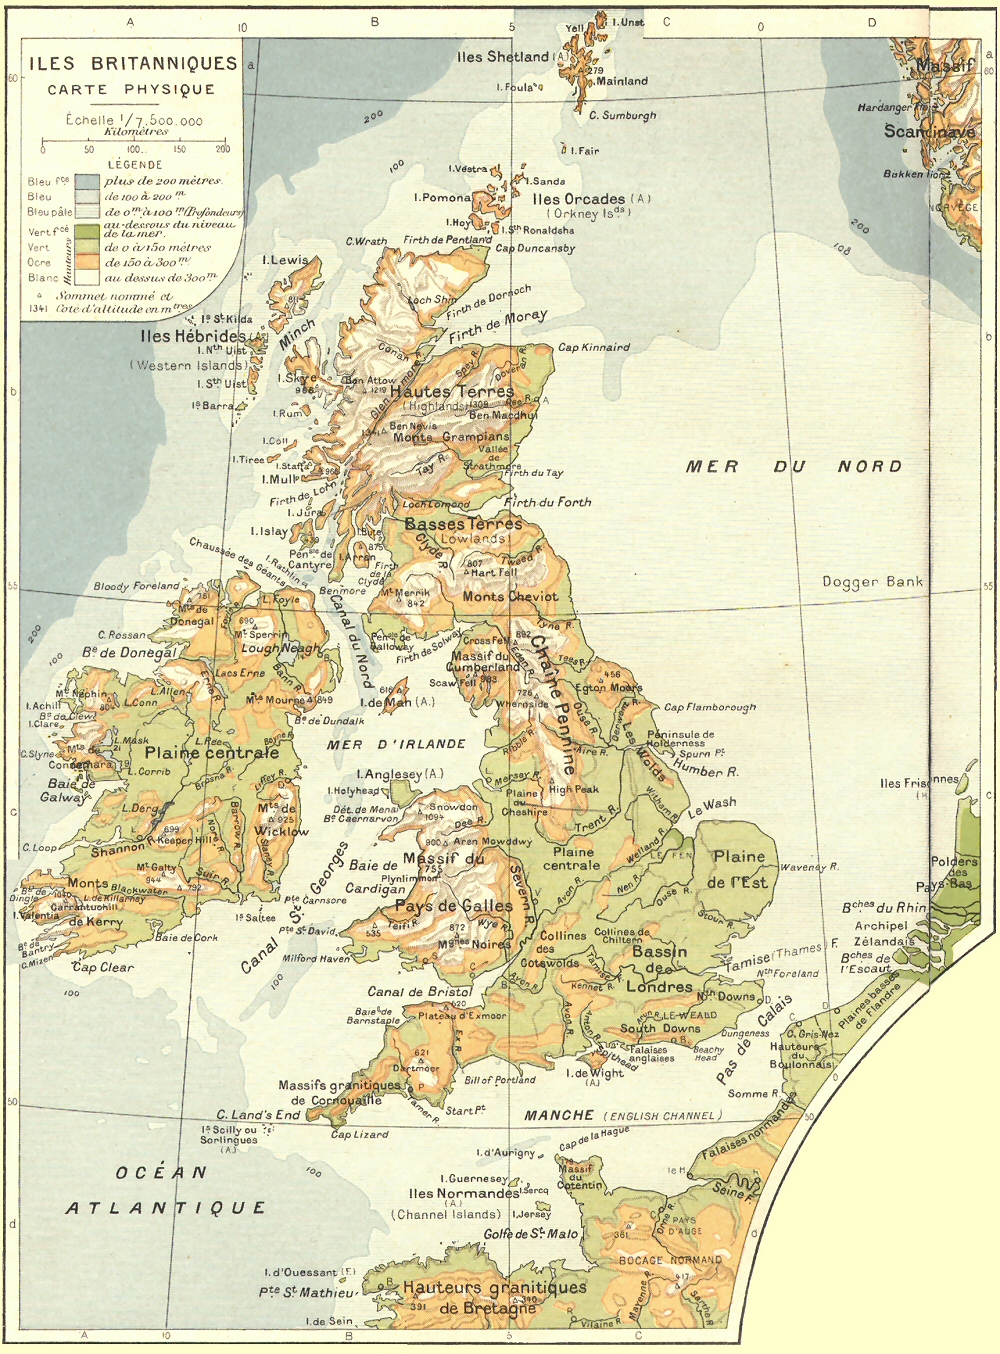 Carte physique des Iles Britanniques.